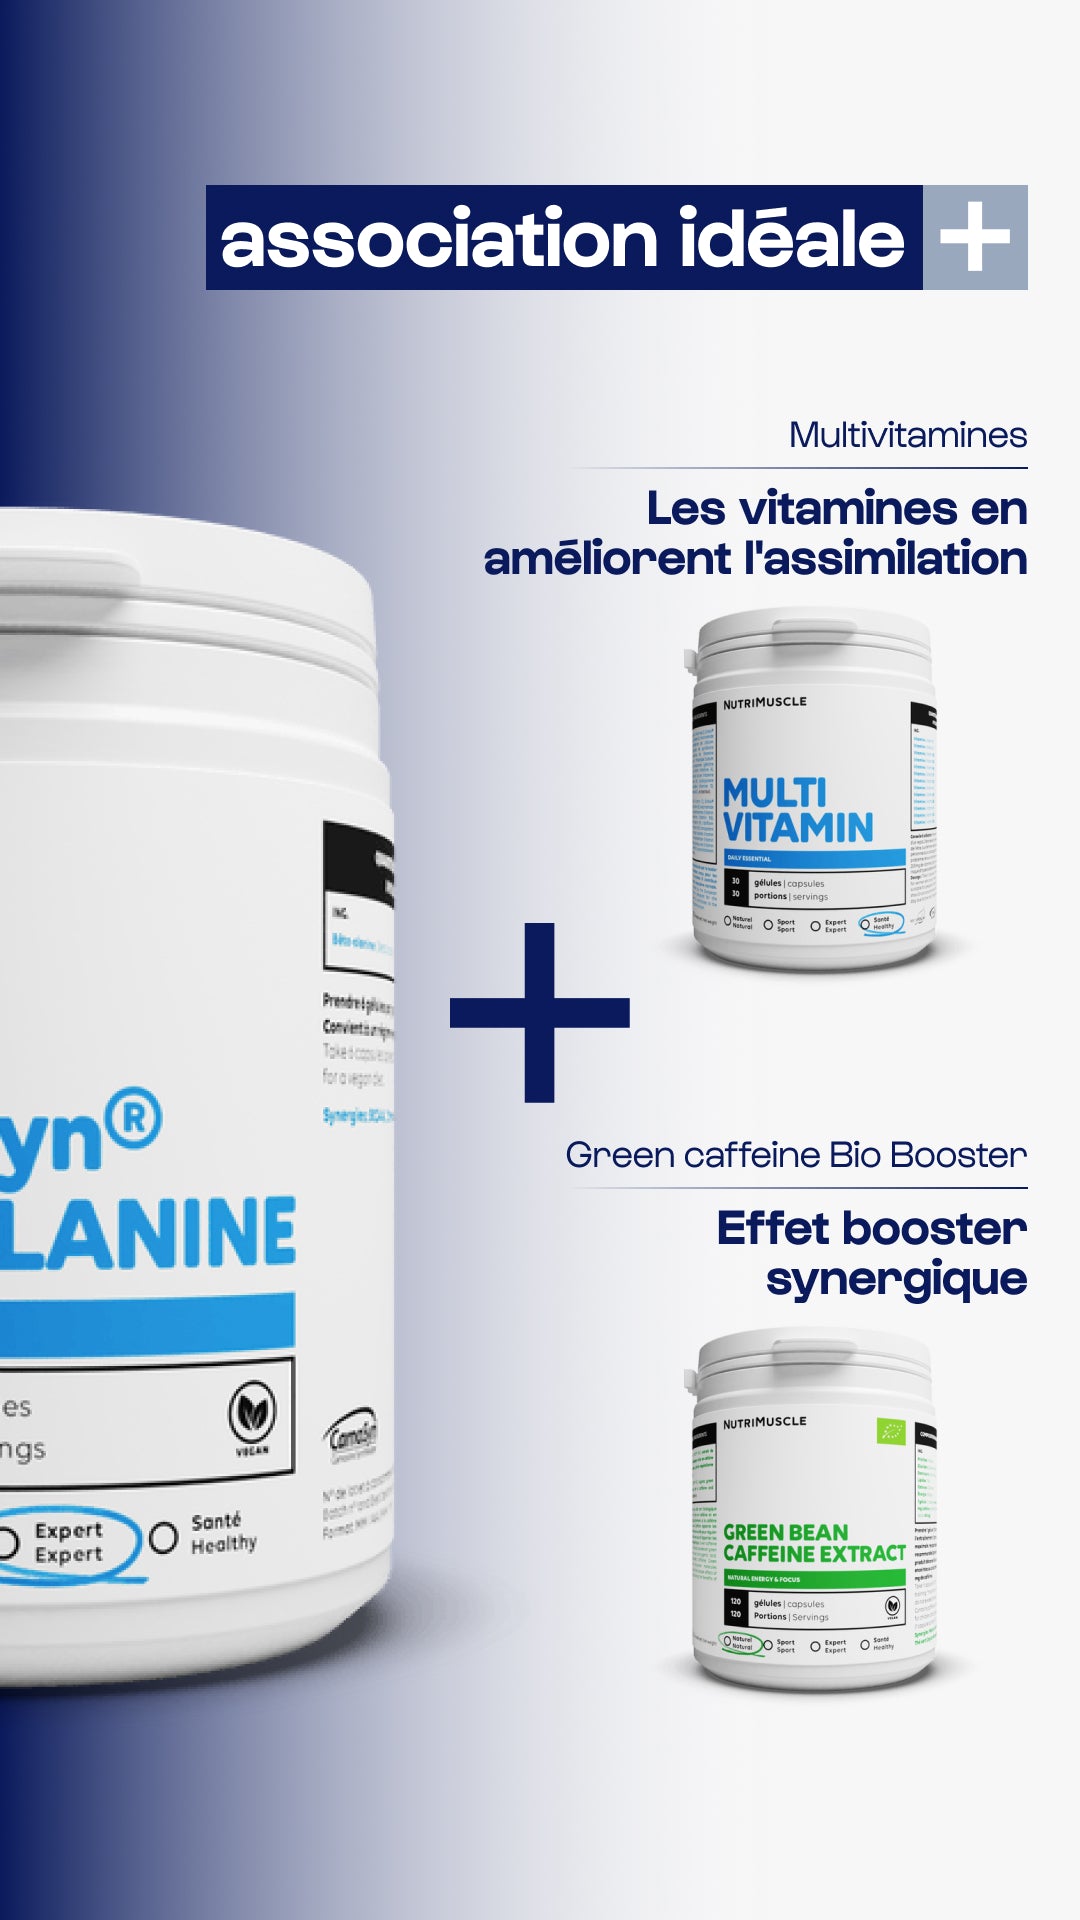 Beta-alanine carnosyn® powder